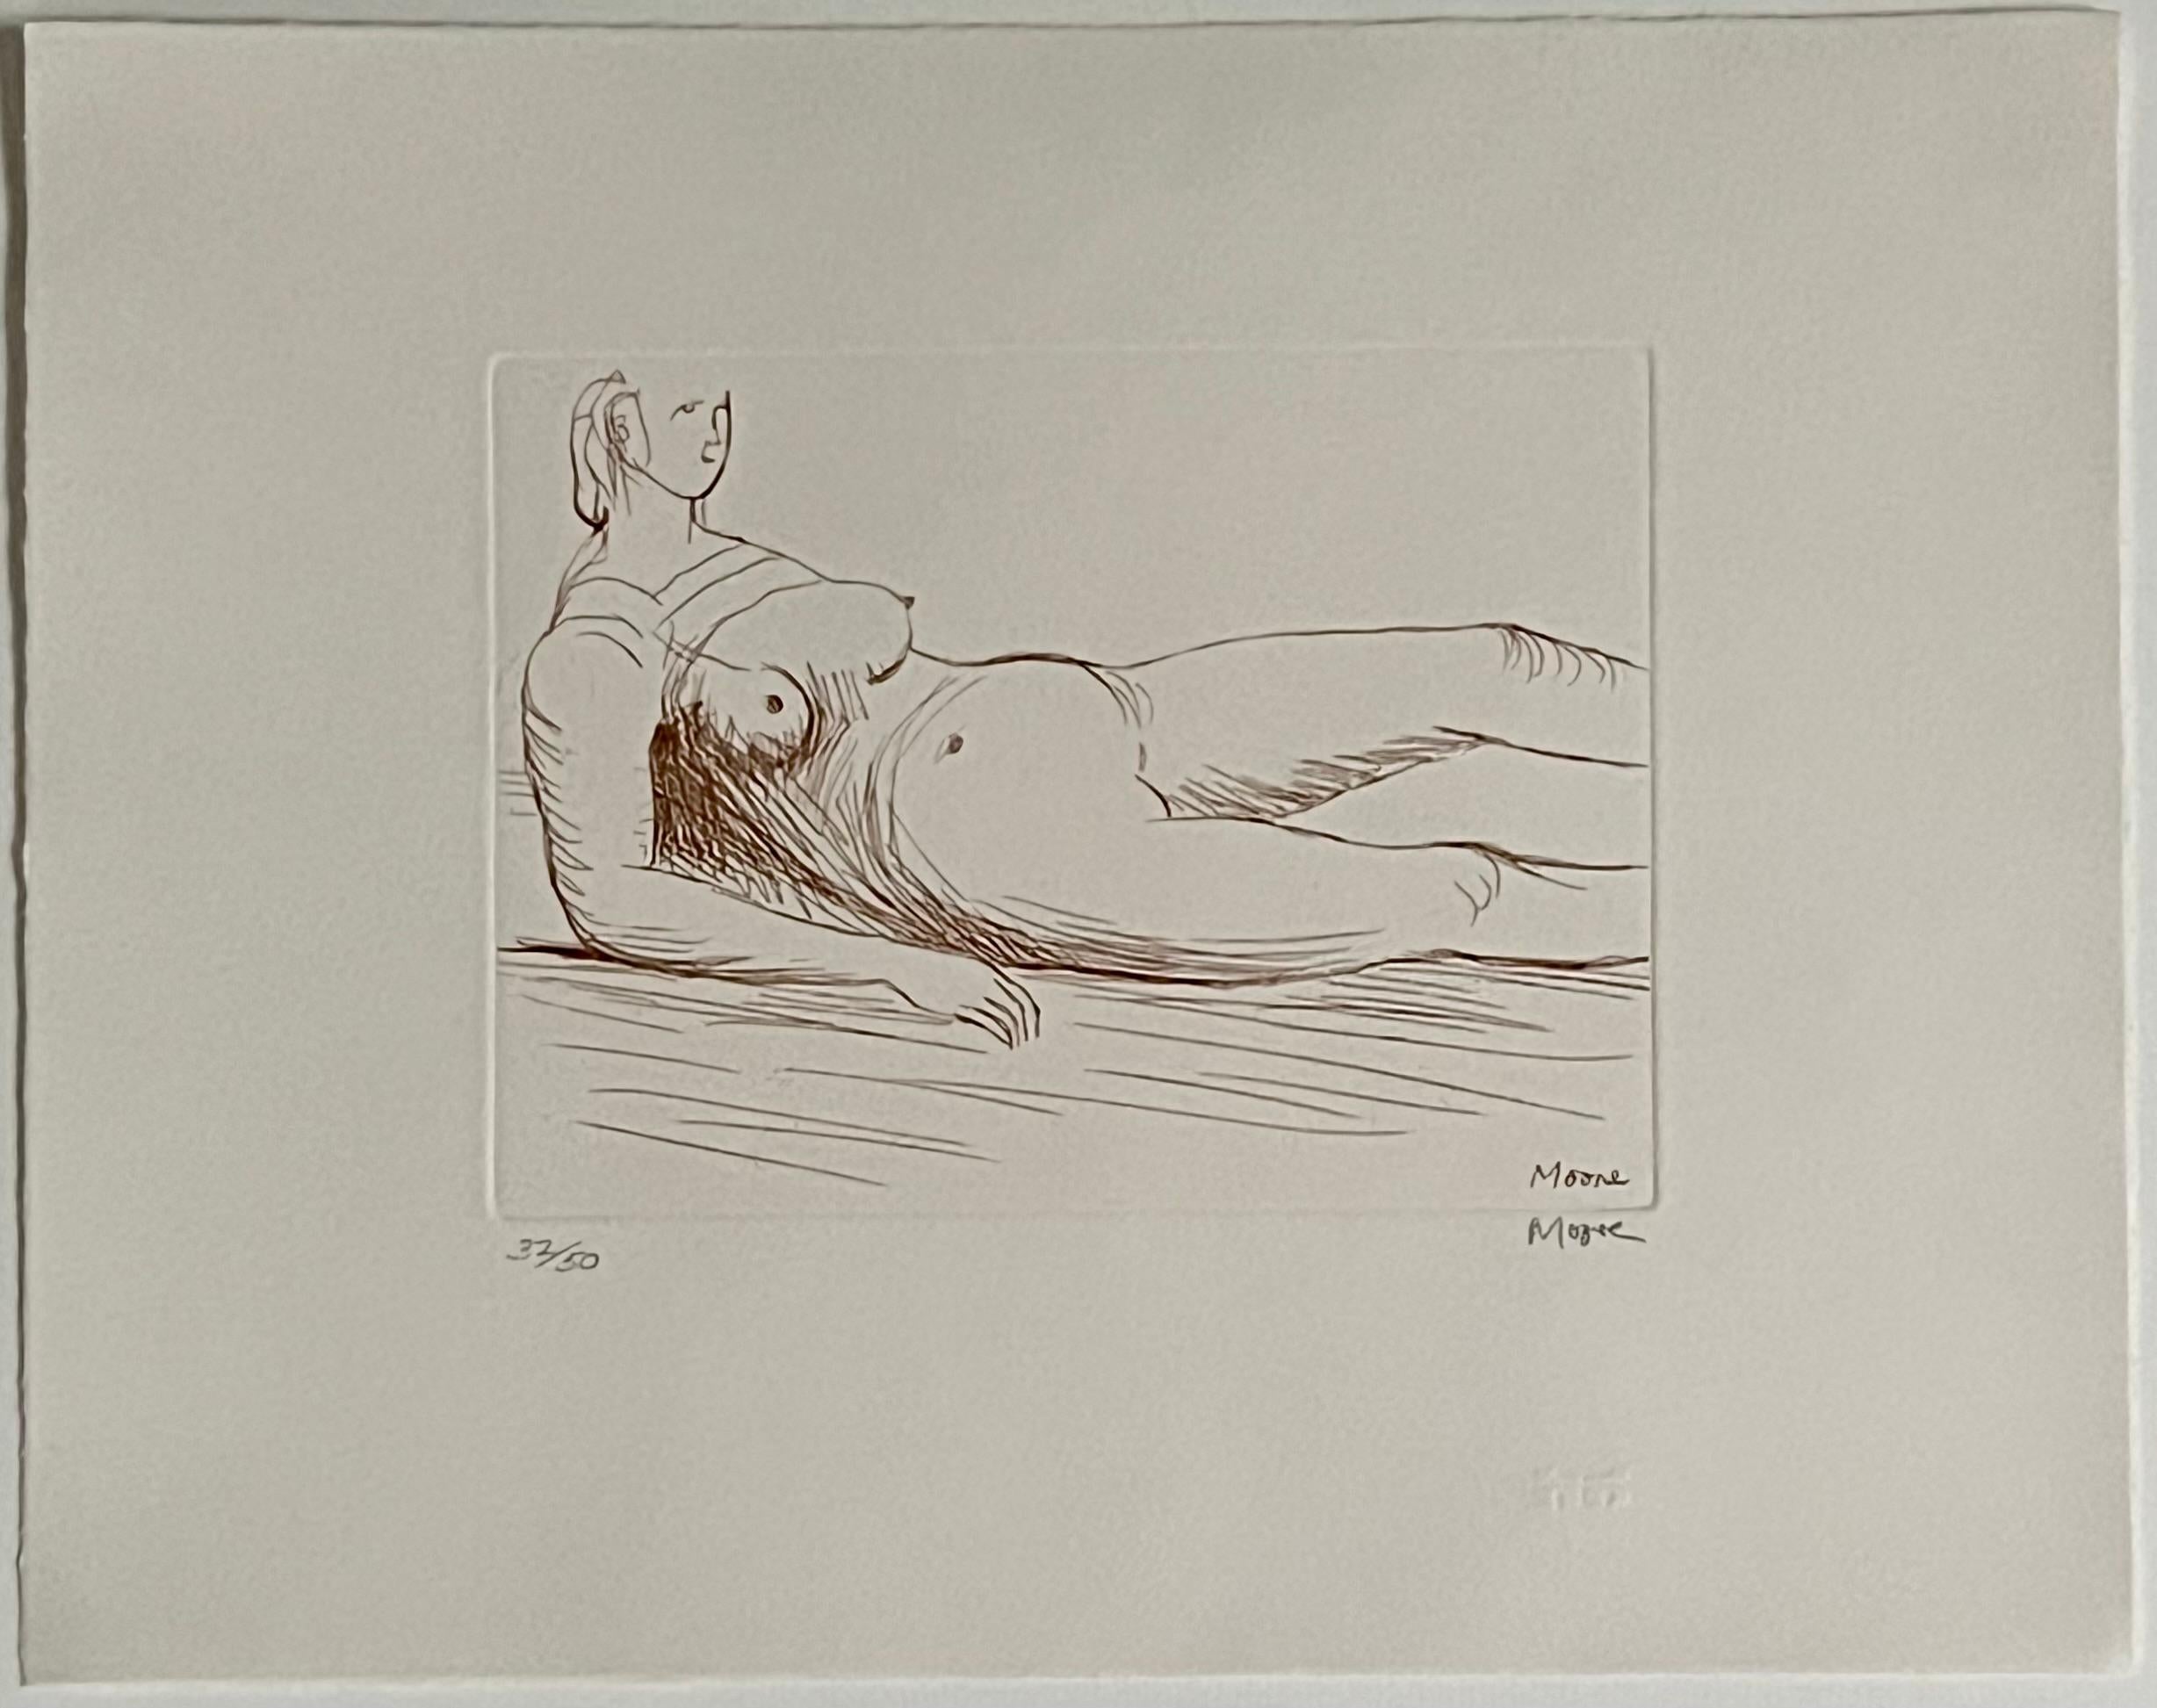 Henry Moore
Liegende Figur
Original-Radierung in Sepia, handsigniert
1979
Bildgröße: 12 5/8 x 15 7/8 Zoll
Gerahmt Abmessungen: 25 x 25 Zoll
Nummeriert 32/50 aus der Auflage von 50 Stück auf Bogenpapier
Erwähnt als #559 in "Henry Moore: The Graphic